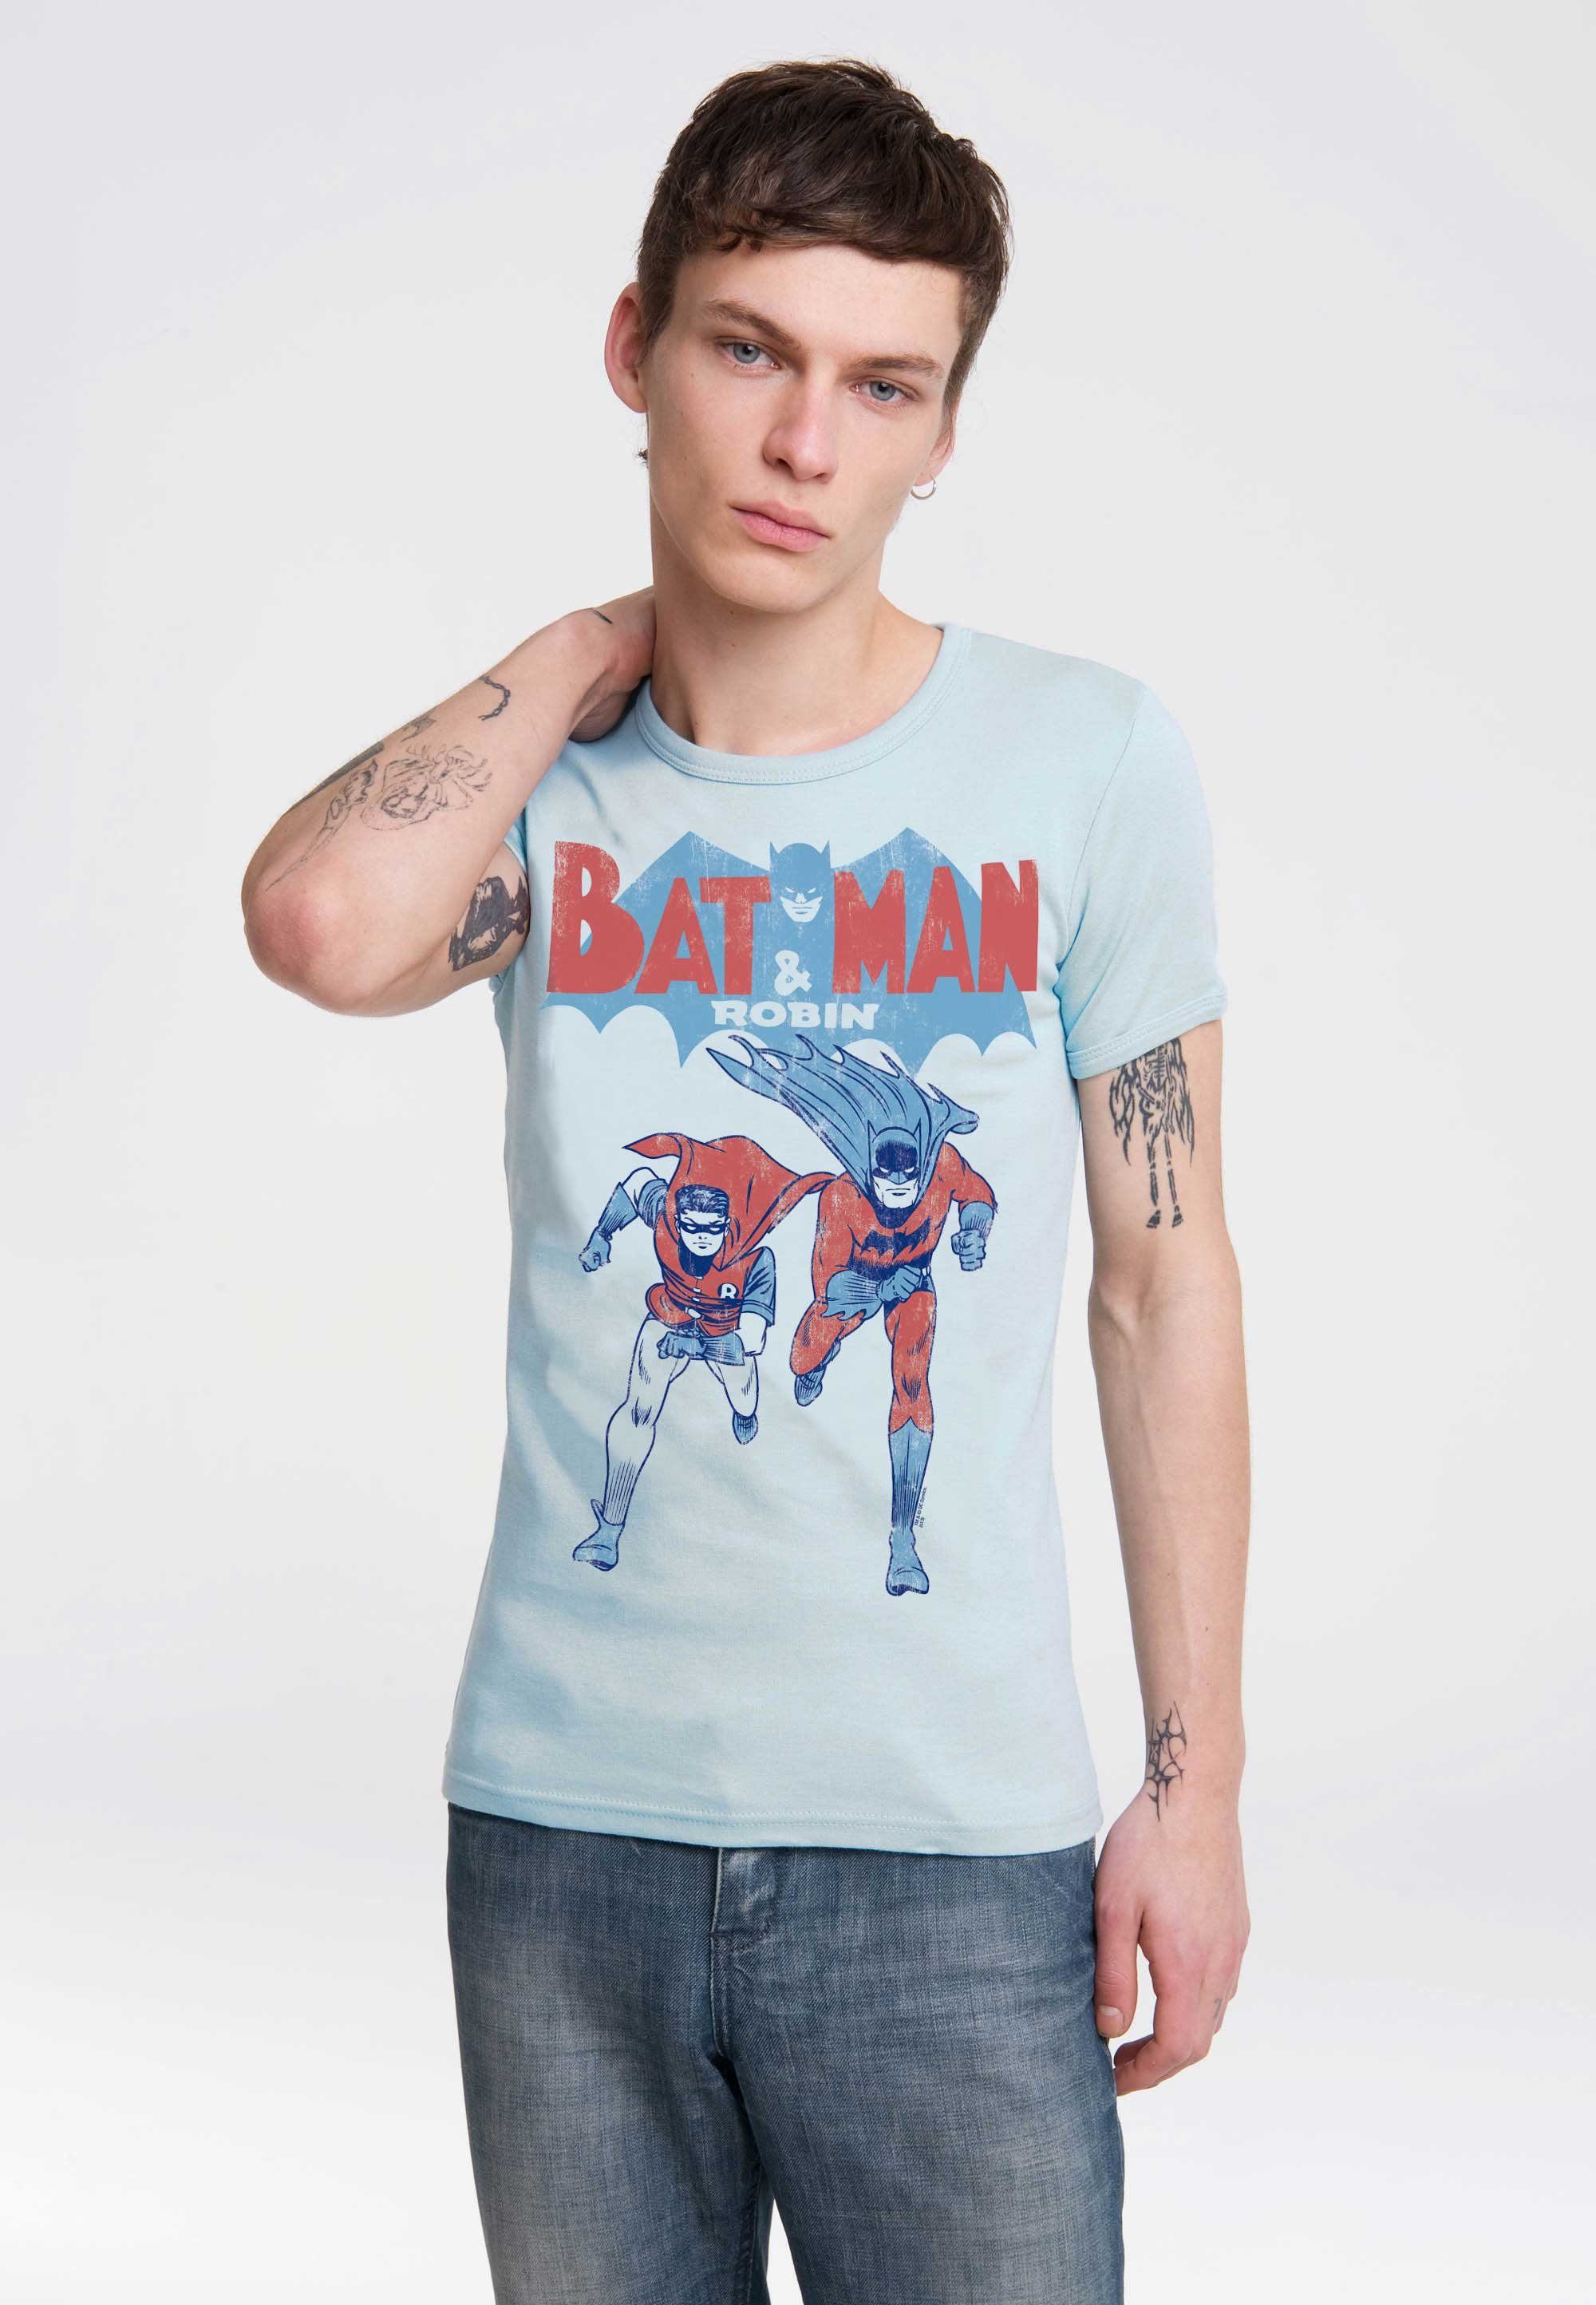 LOGOSHIRT T-Shirt trendigem & mit Superhelden-Print Batman Robin